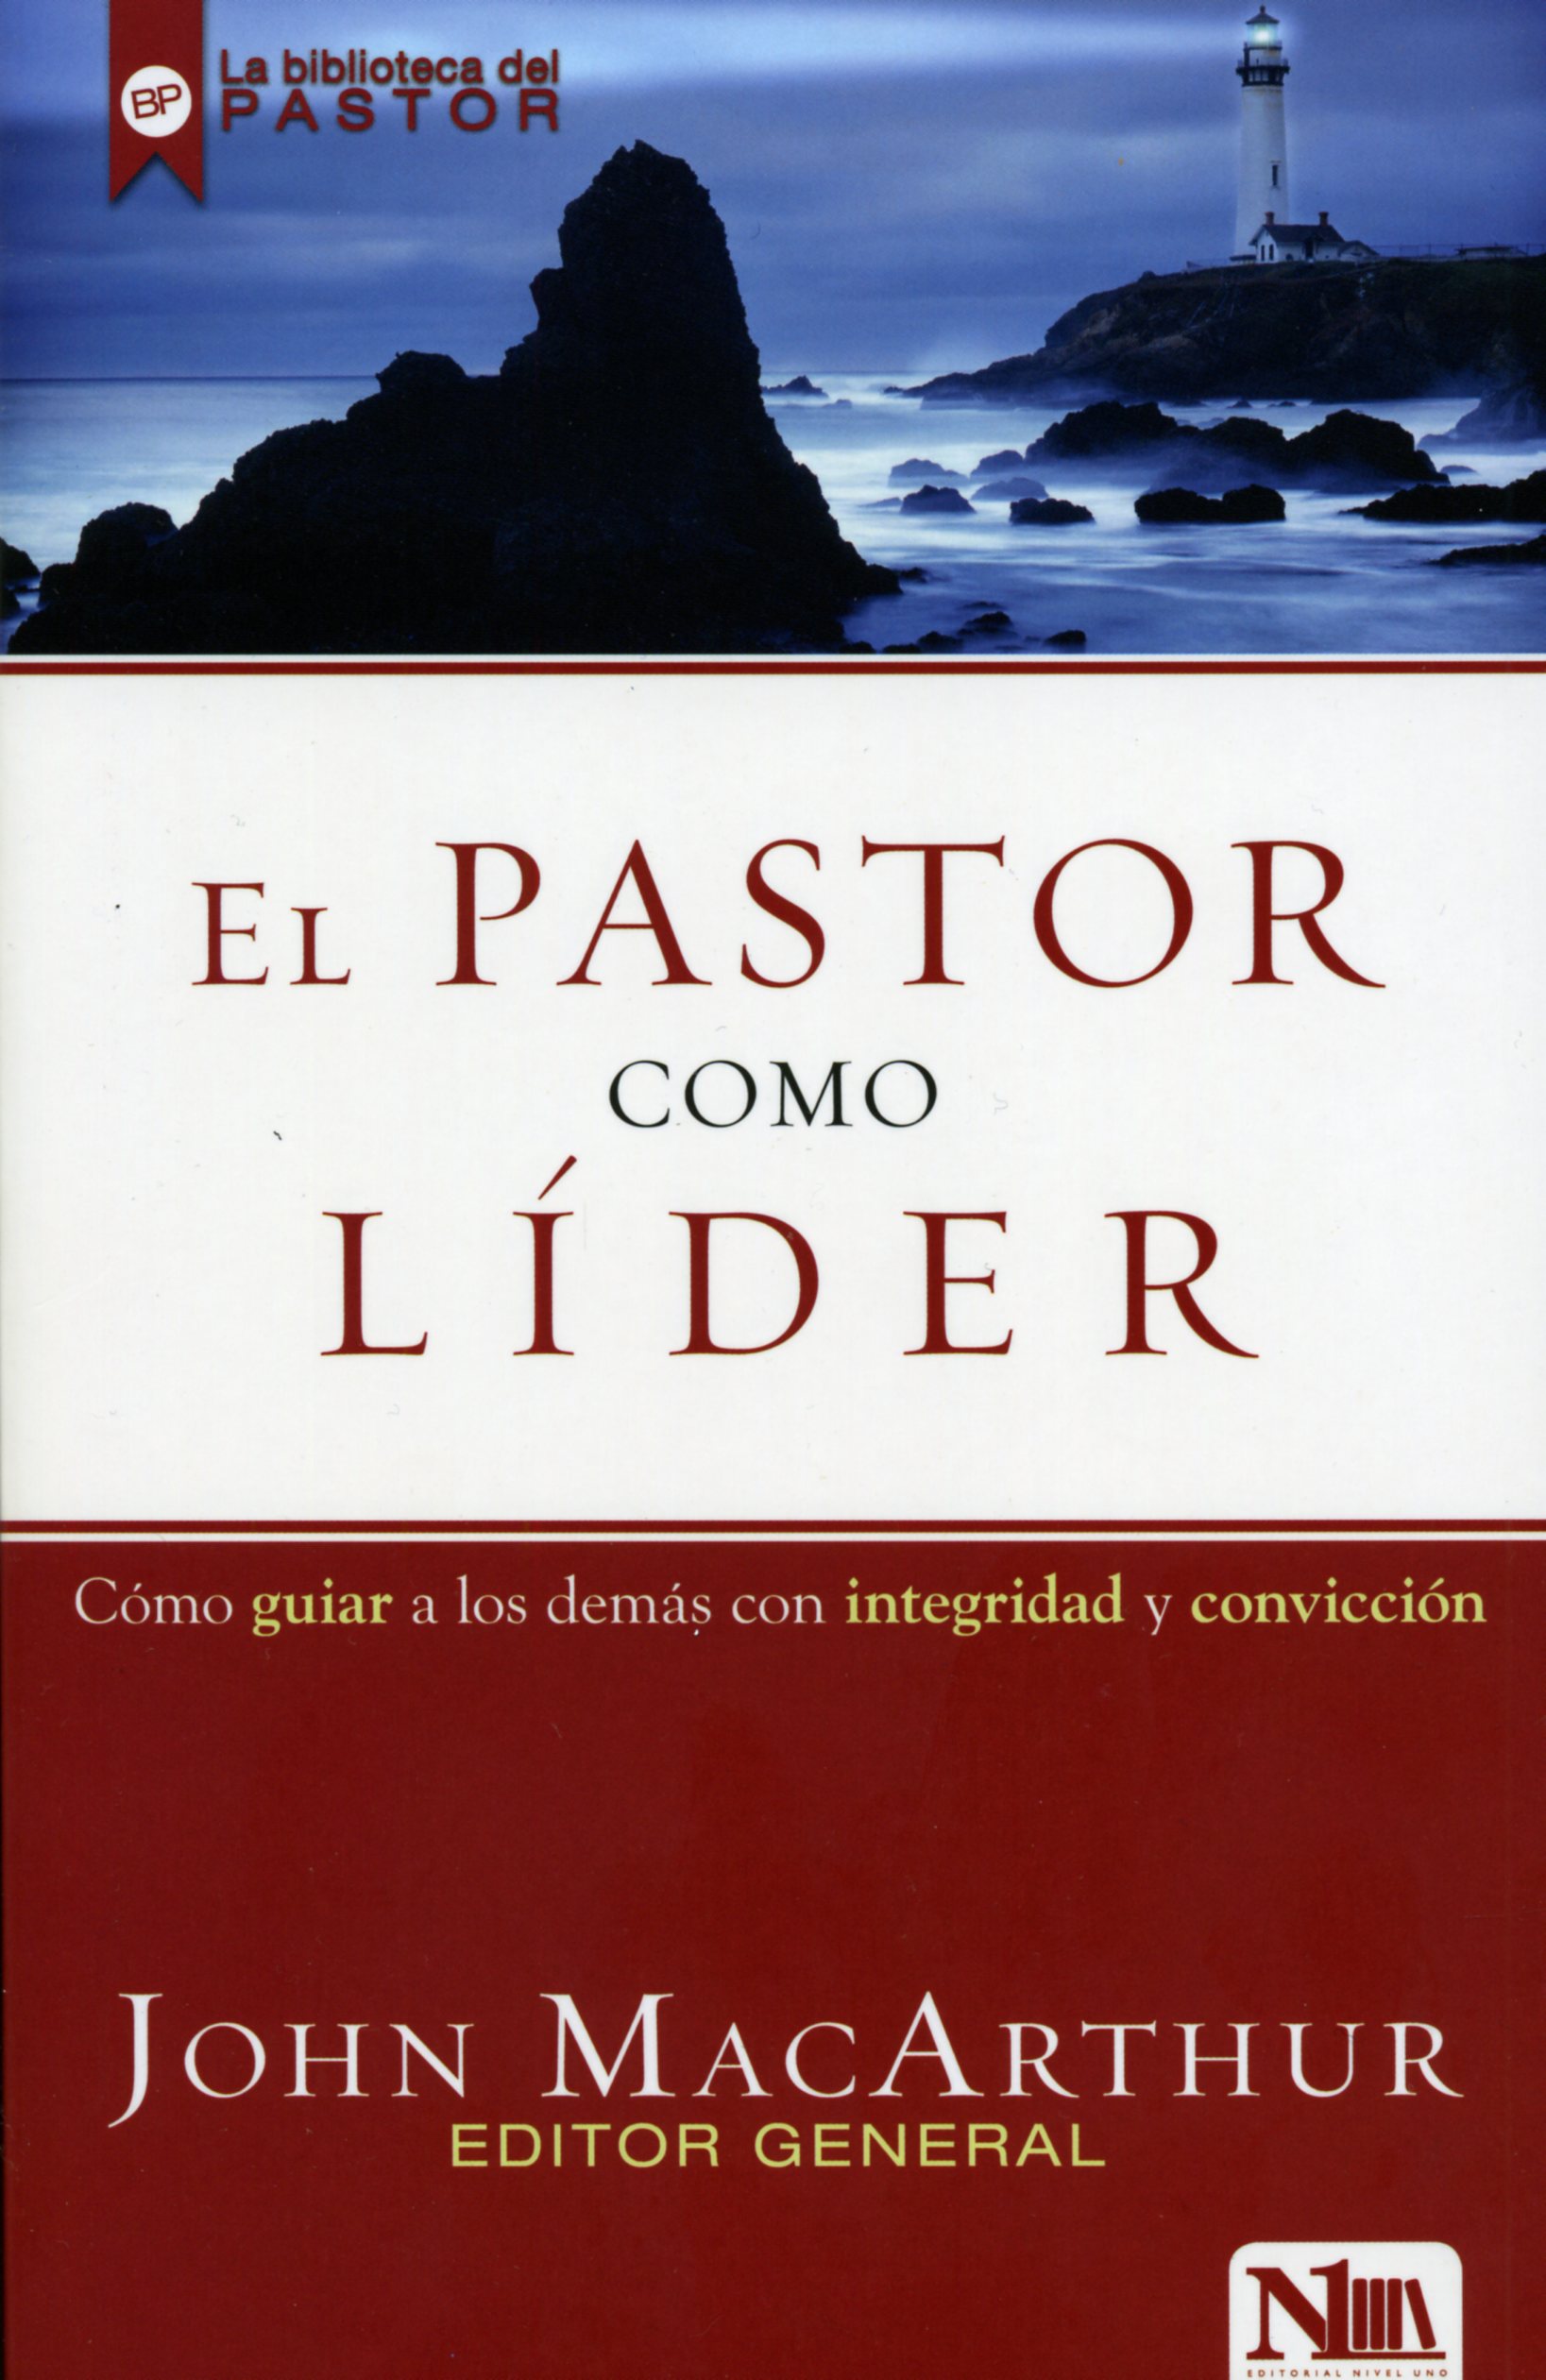 El Pastor Como Líder